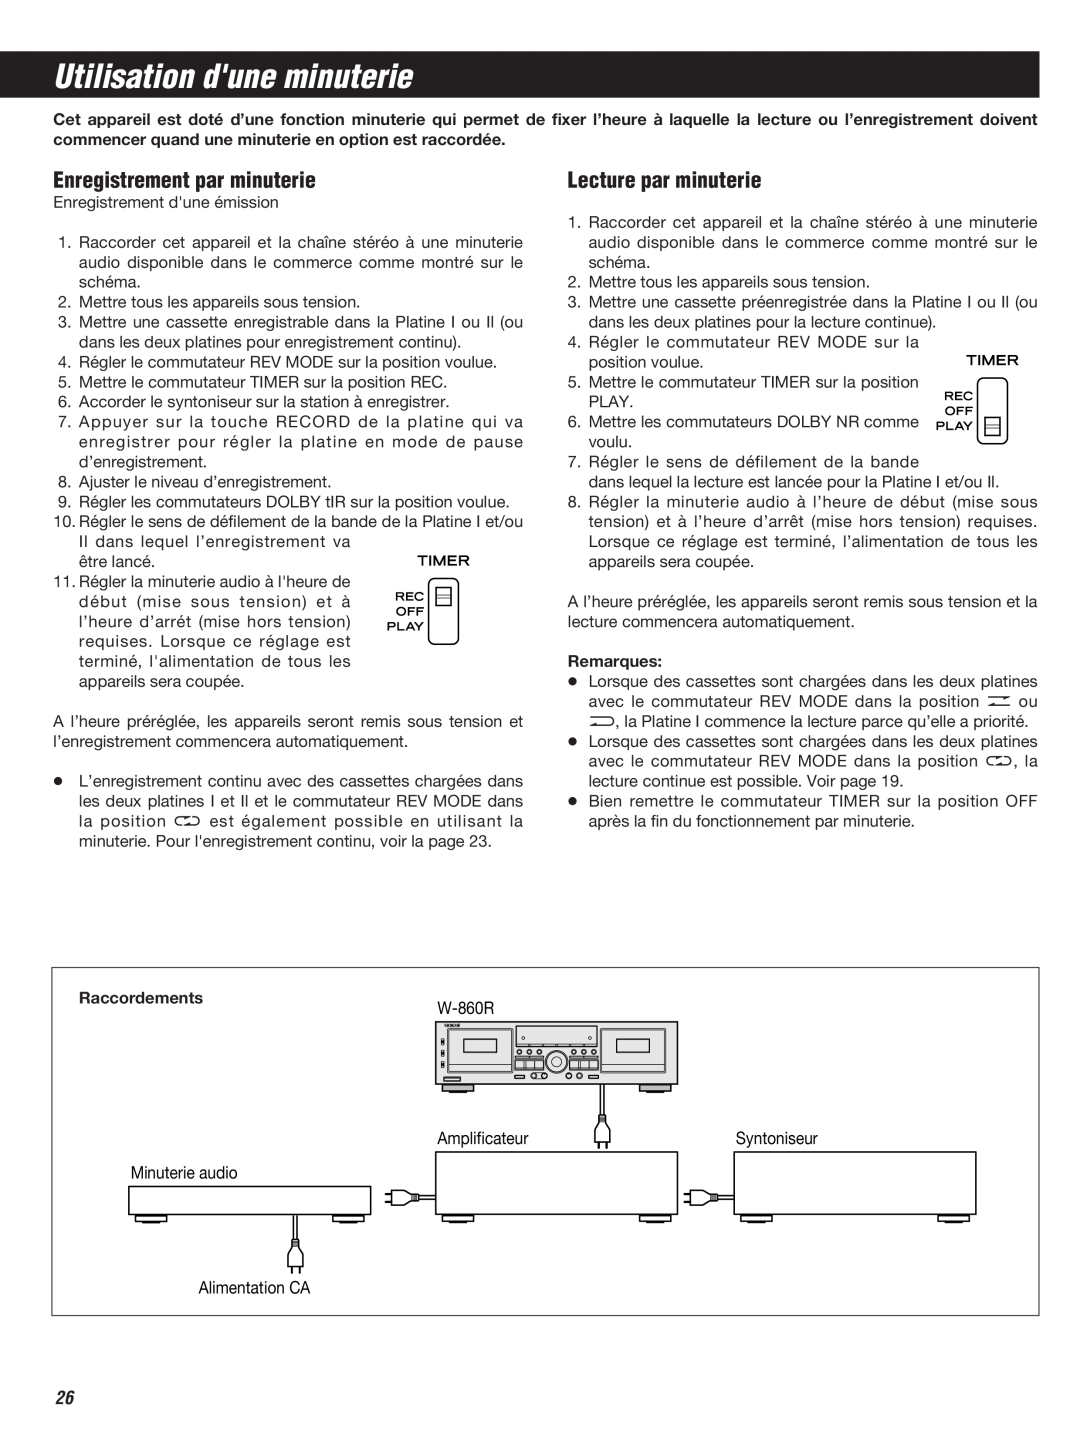 Teac W-860R owner manual Utilisation dune minuterie, Enregistrement par minuterie, Lecture par minuterie 